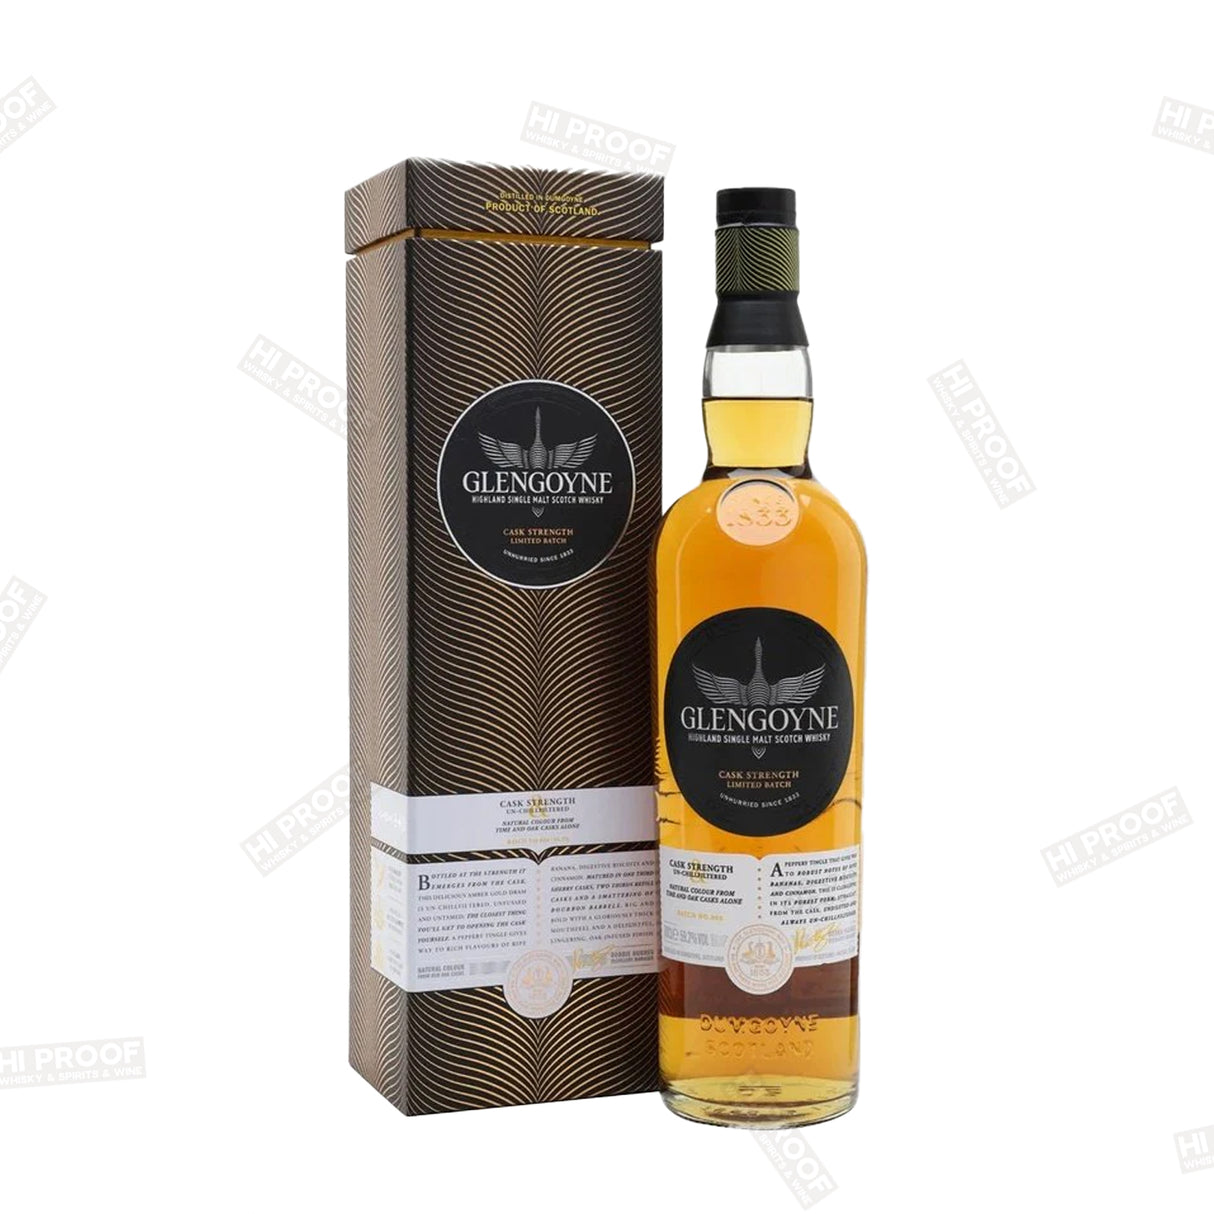 Glengoyne Cask Strength Highland Single Malt Scotch Whisky